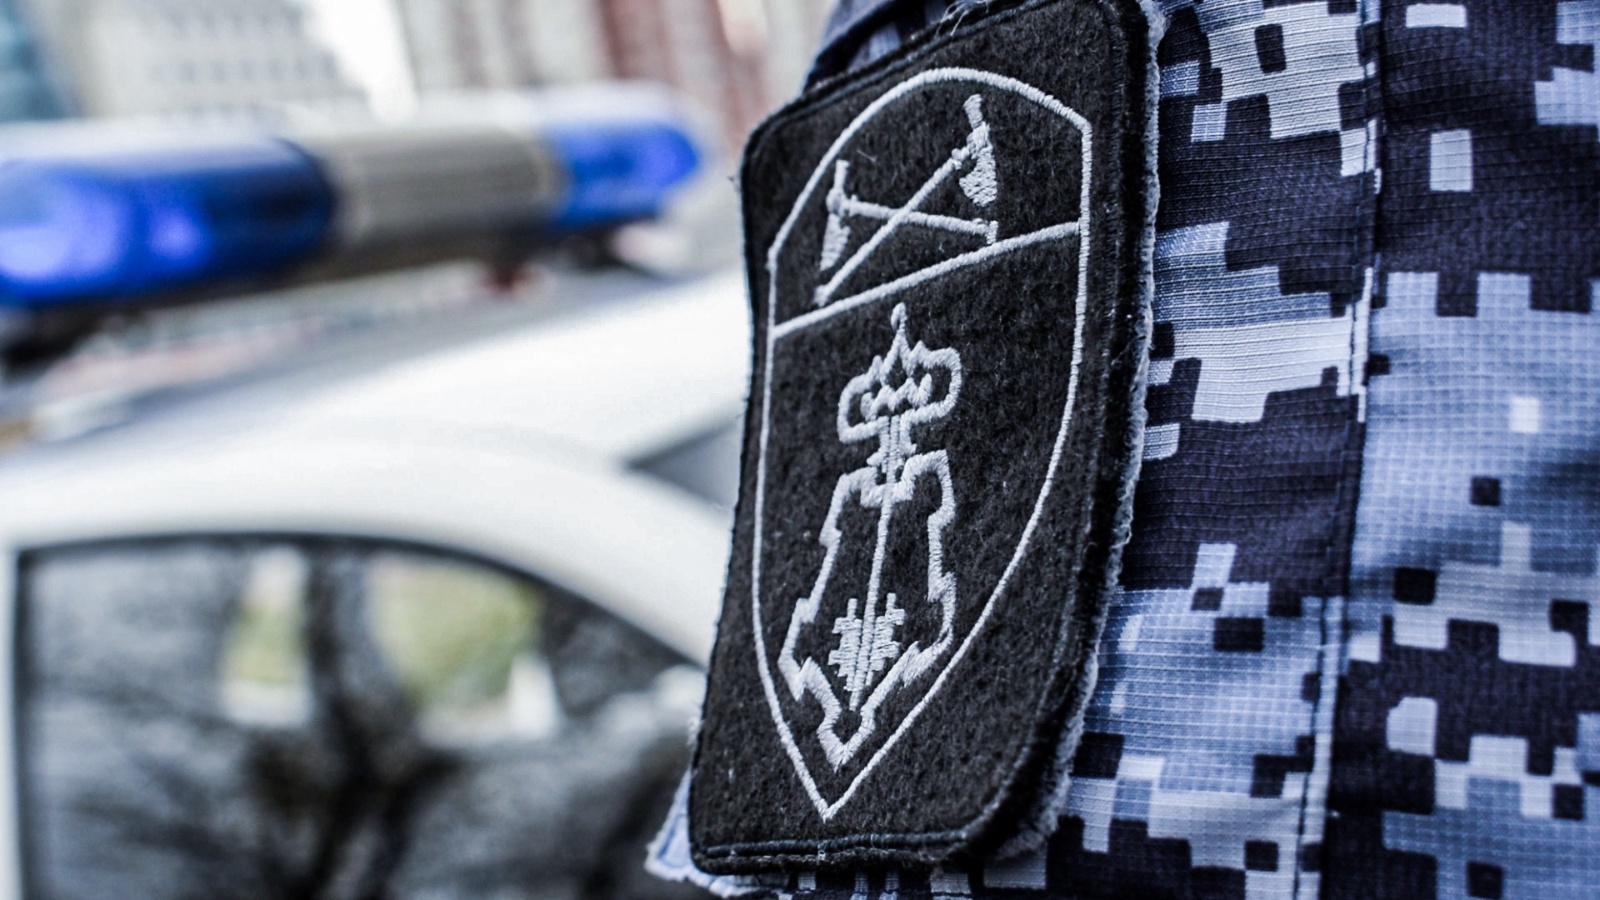 Сотрудники Росгвардии и полиции в г. Альметьевске  задержали подозреваемого в краже с проникновением в сетевой магазин